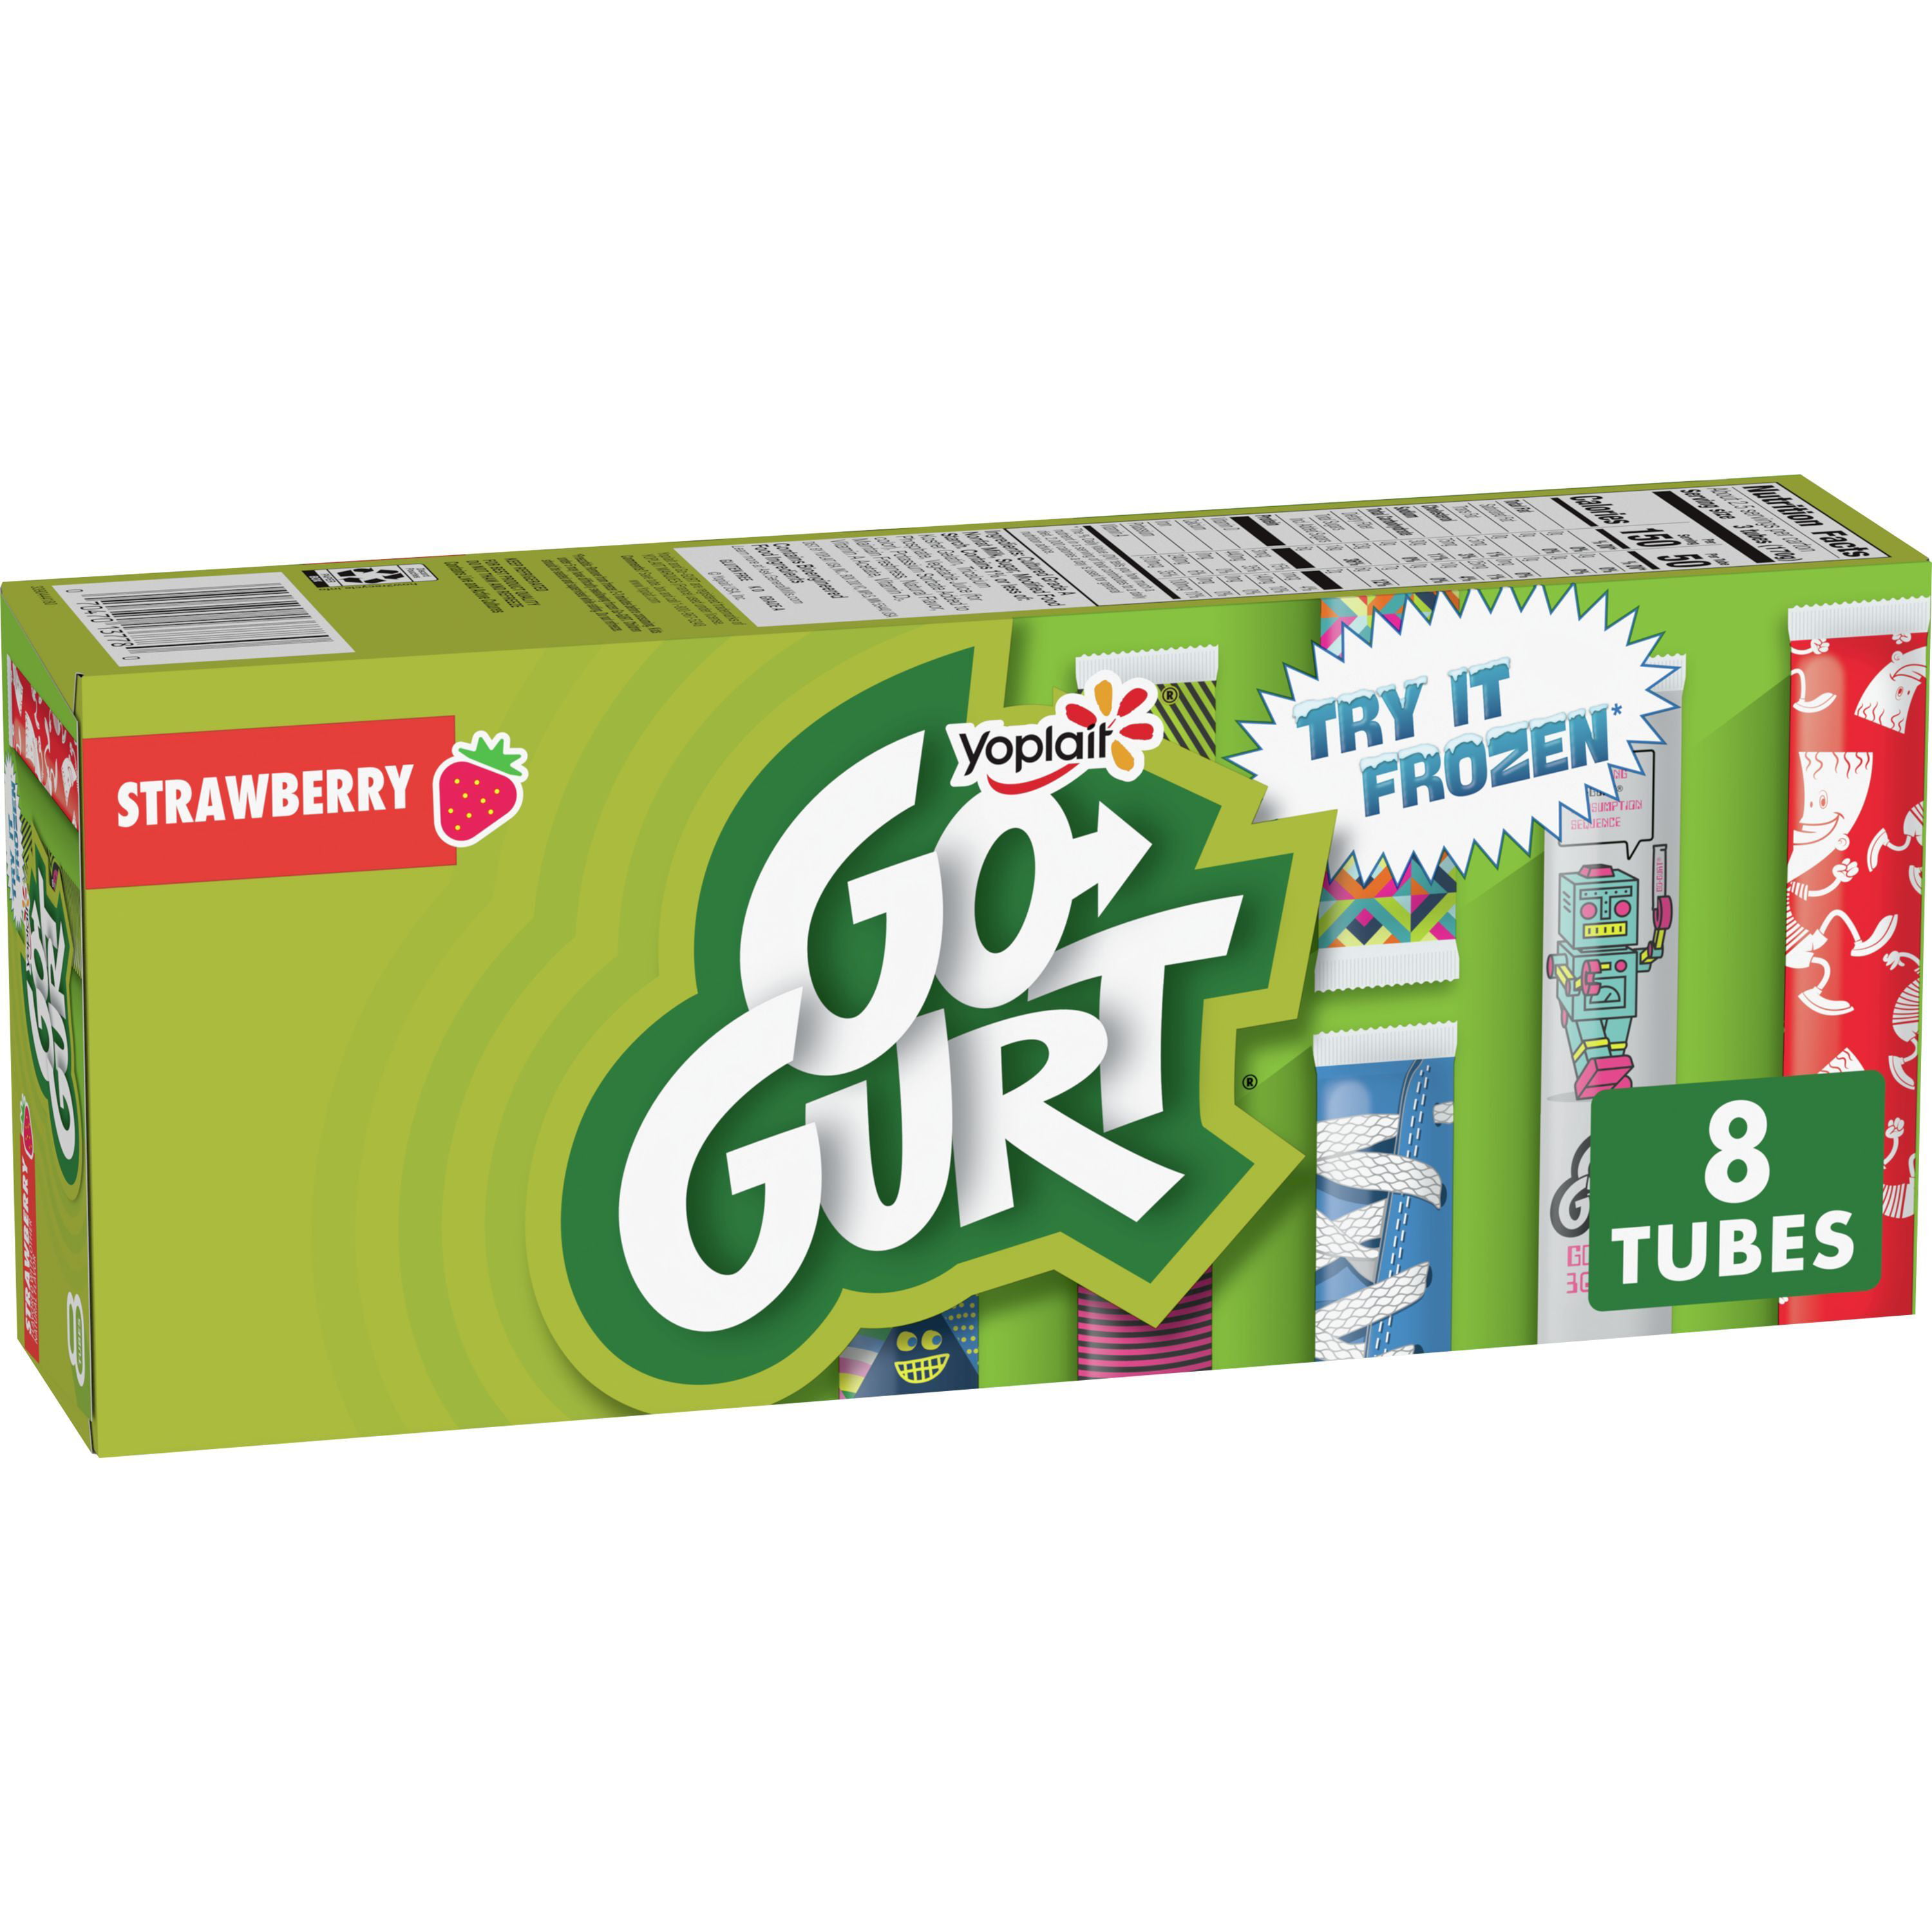 Groot GURT Go-GURT Fat Free Strawberry Yogurt, 8 ct, 2 OZ Yogurt Tubes